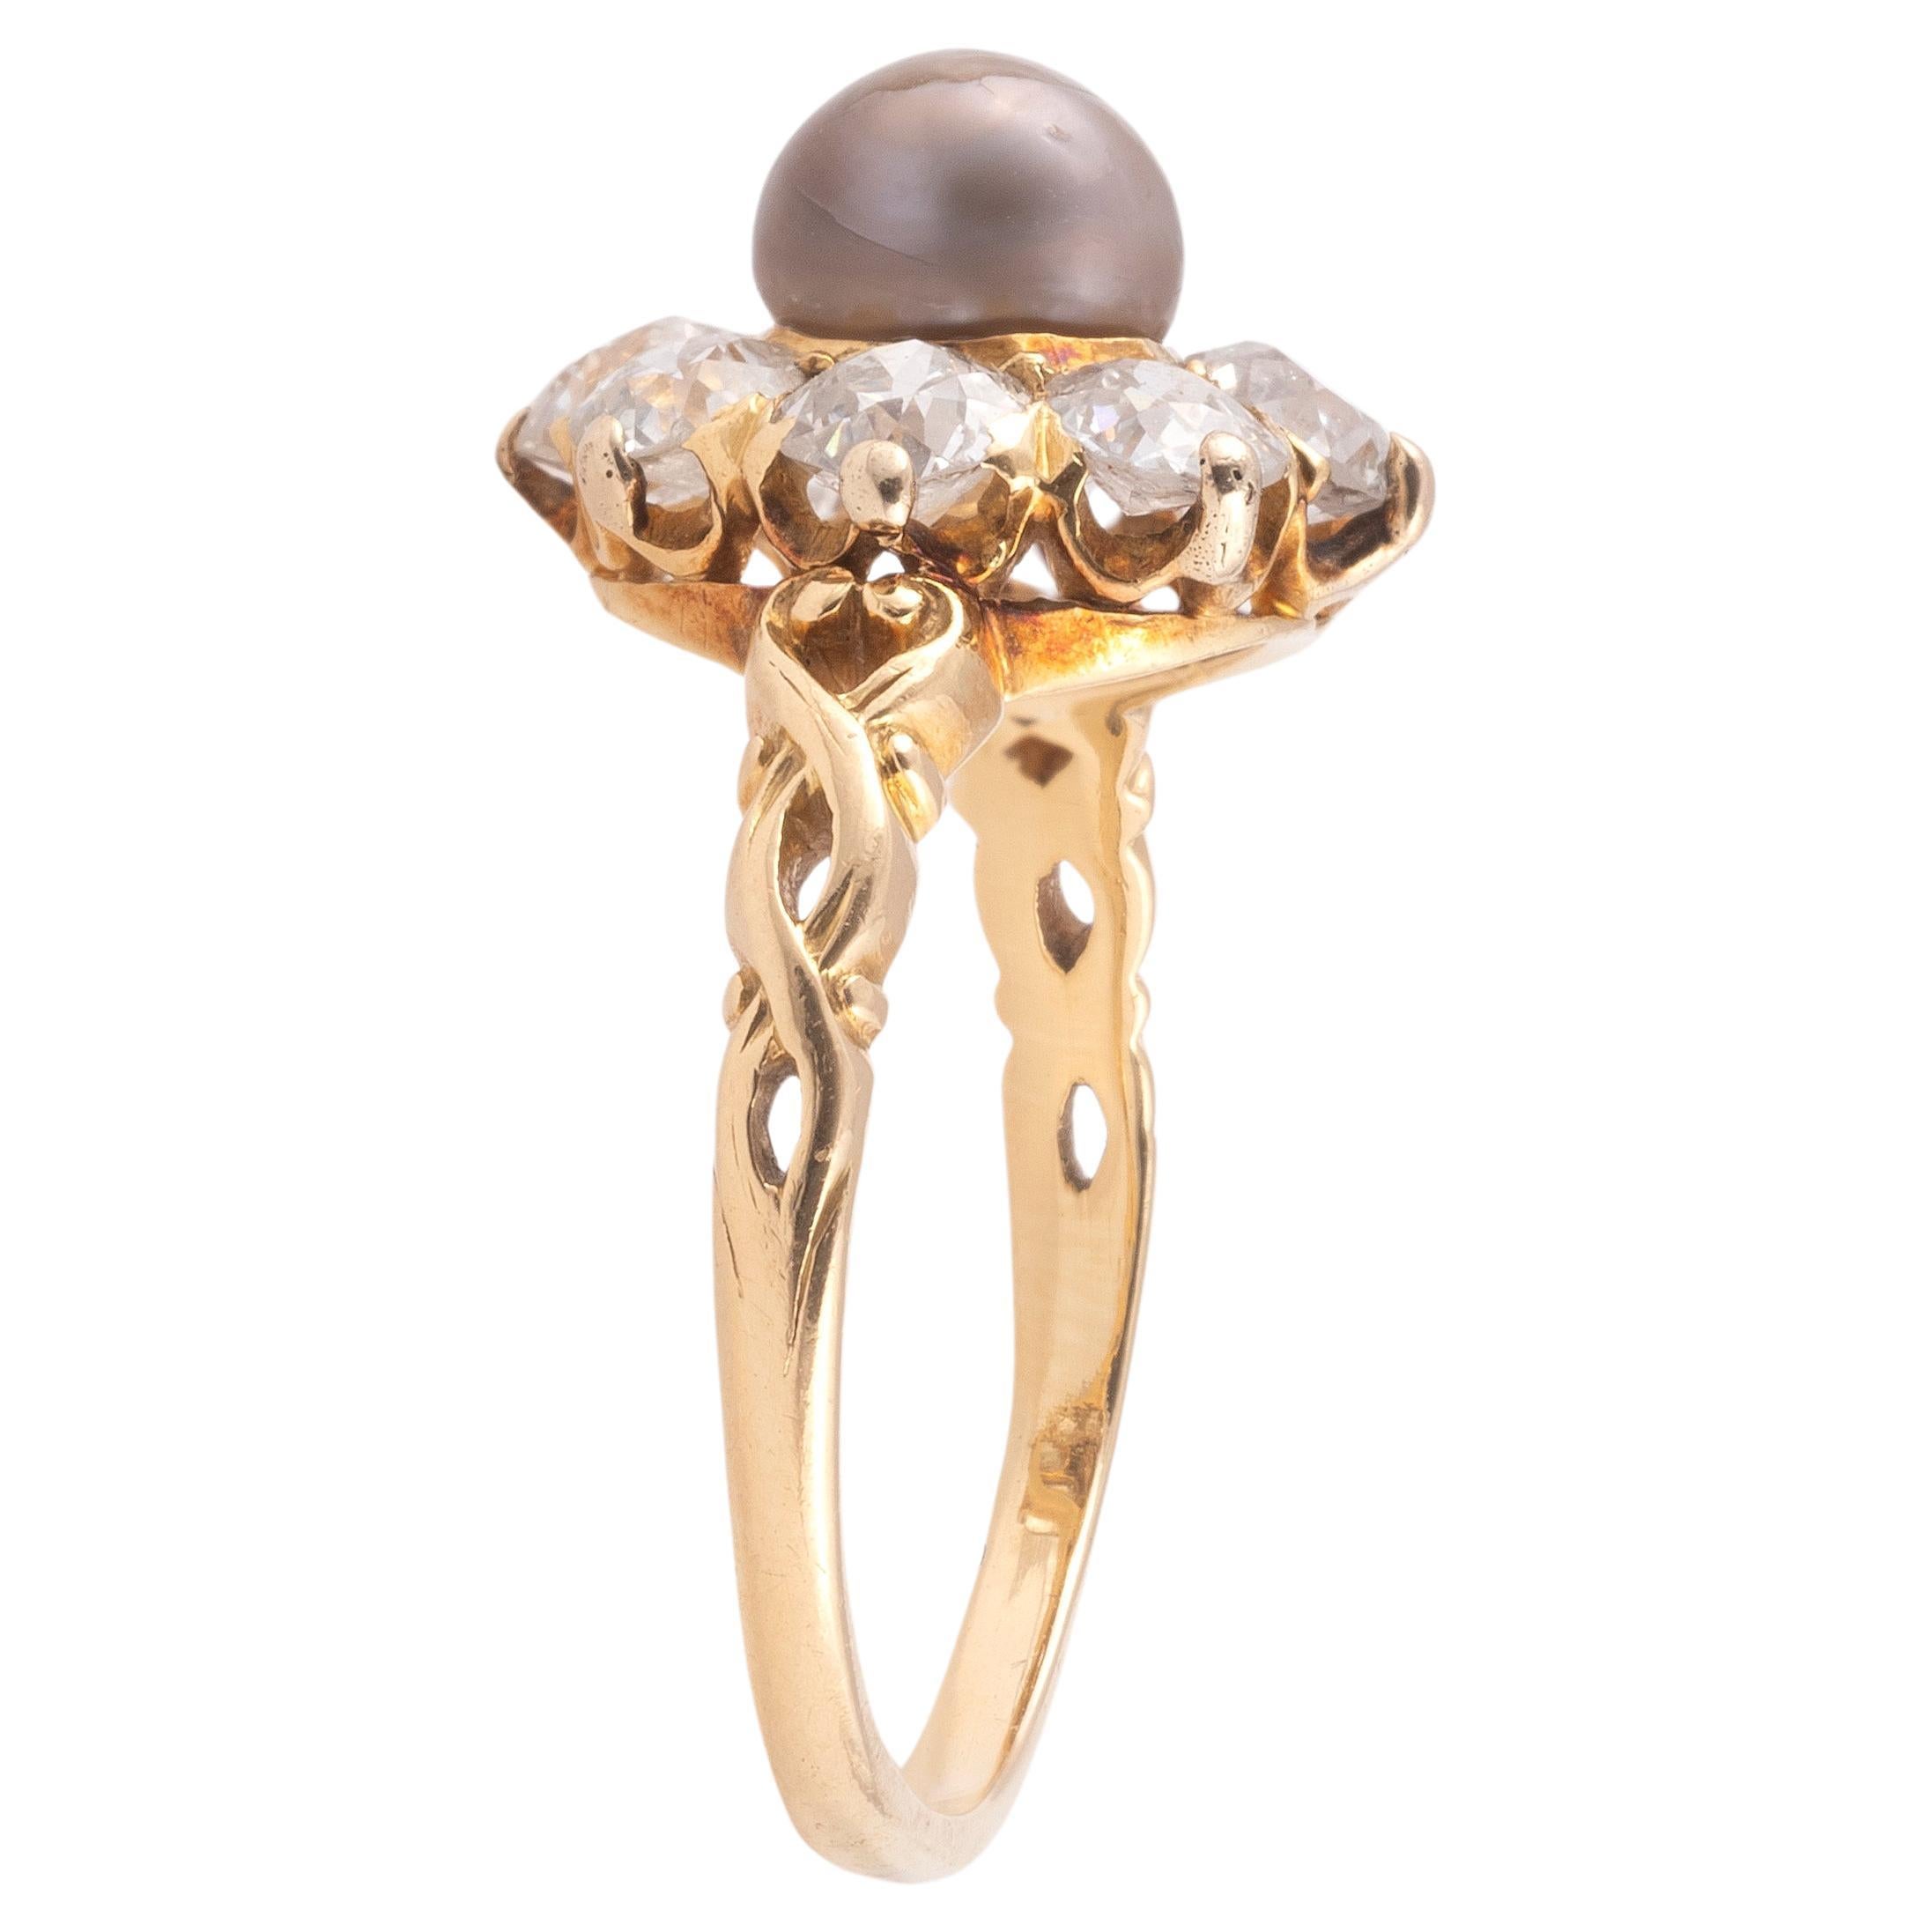 Ein Ring mit Perlen- und Diamantenbesatz.
Eine Perle, umgeben von acht kissenförmigen Diamanten mit altem Minenschliff in einem Cluster auf geschnitzten Schultern. Montiert in Gelbgold. Jeder Diamant hat ca. 0,10 Karat. Die Perle ist ca. 6 mm